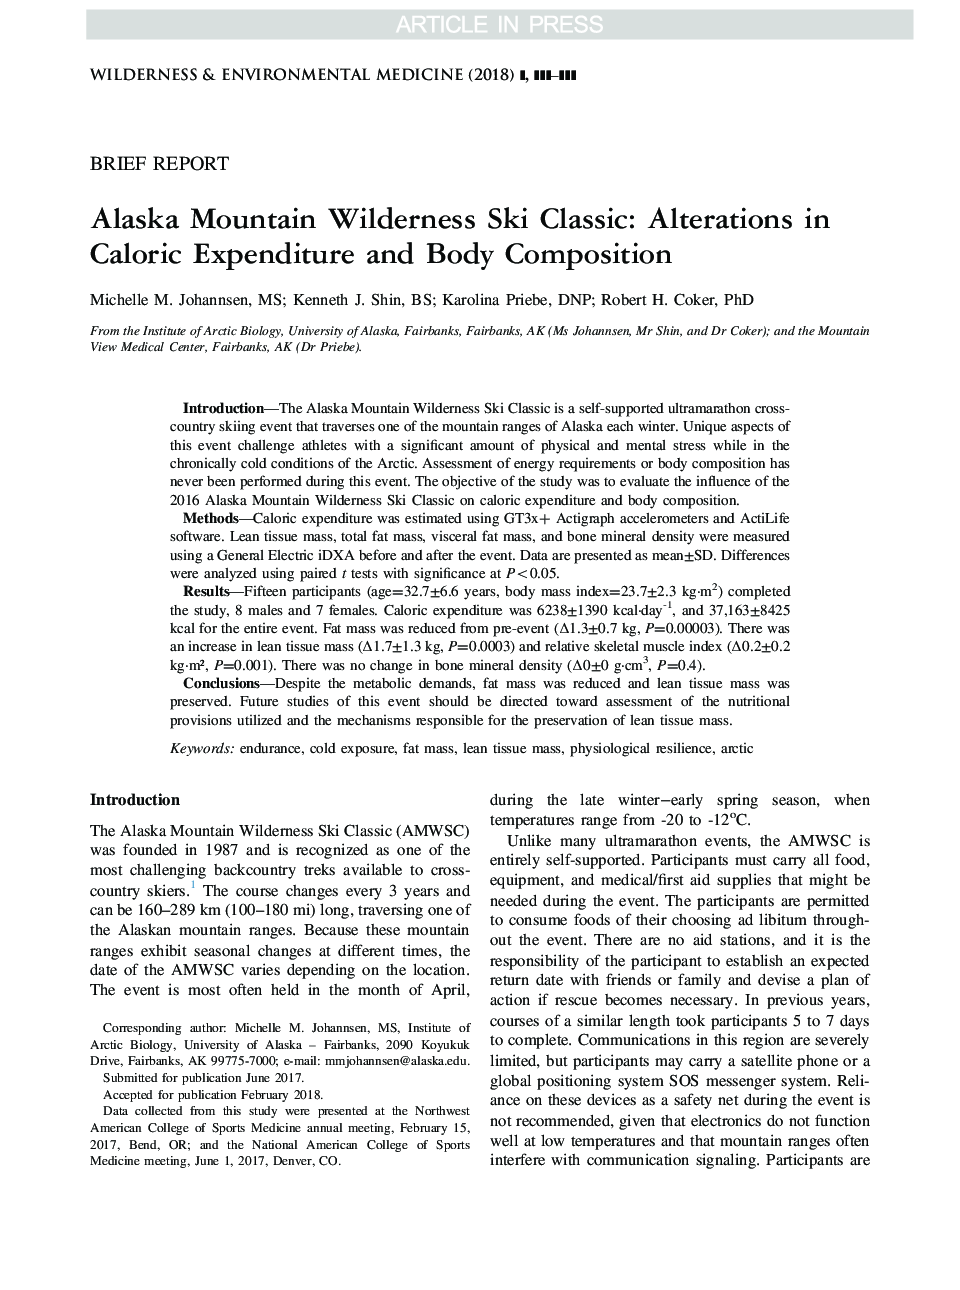 کلاسیک بیلیارد کوه آلاسکا: تغییرات در هزینه های کالری و ترکیب بدن 